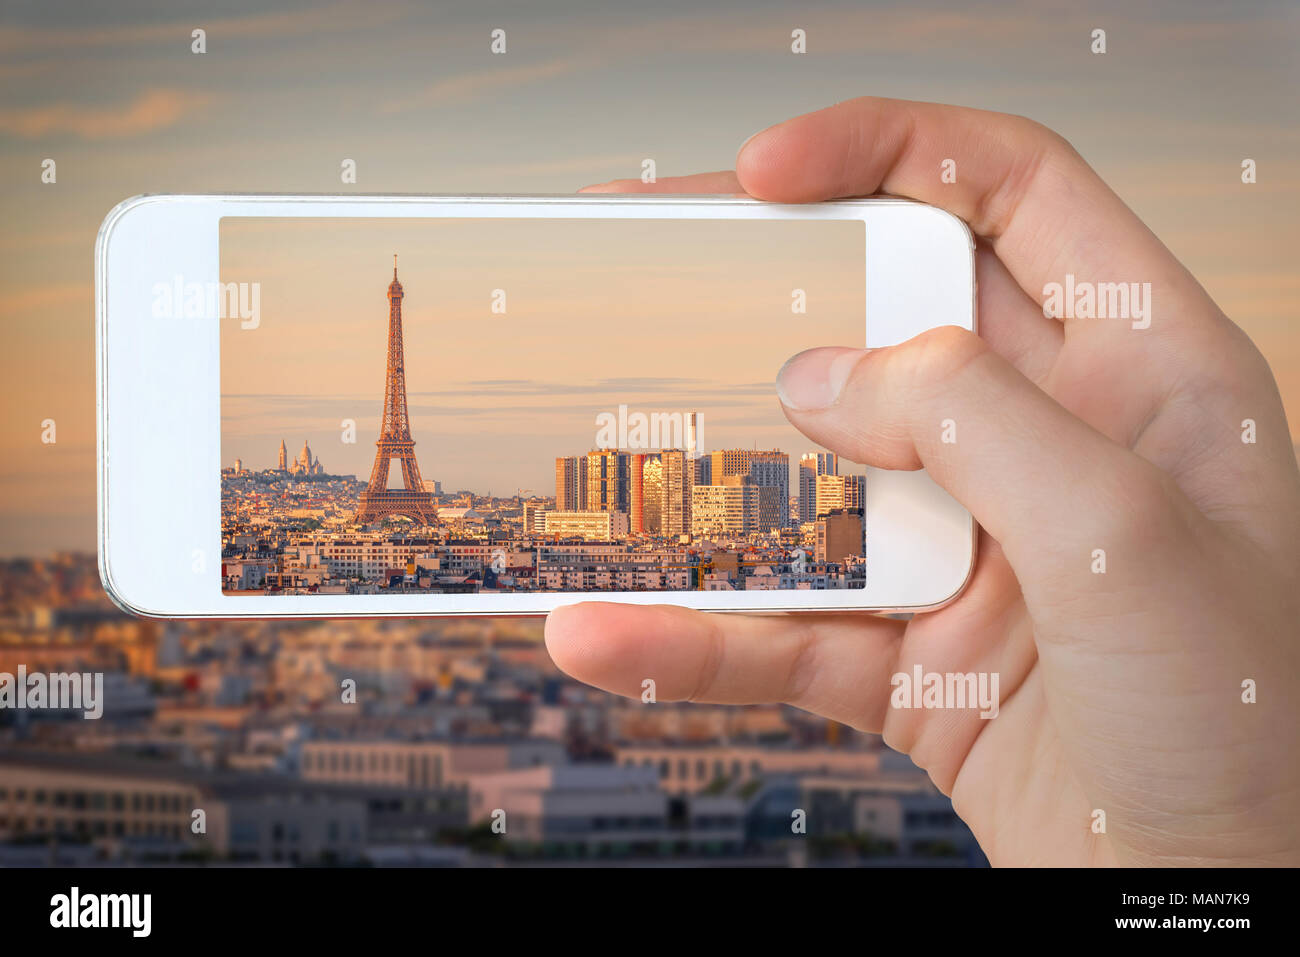 Libre d'une part avec le smartphone de prendre une photo de Paris avec la Tour Eiffel au coucher du soleil, France Banque D'Images